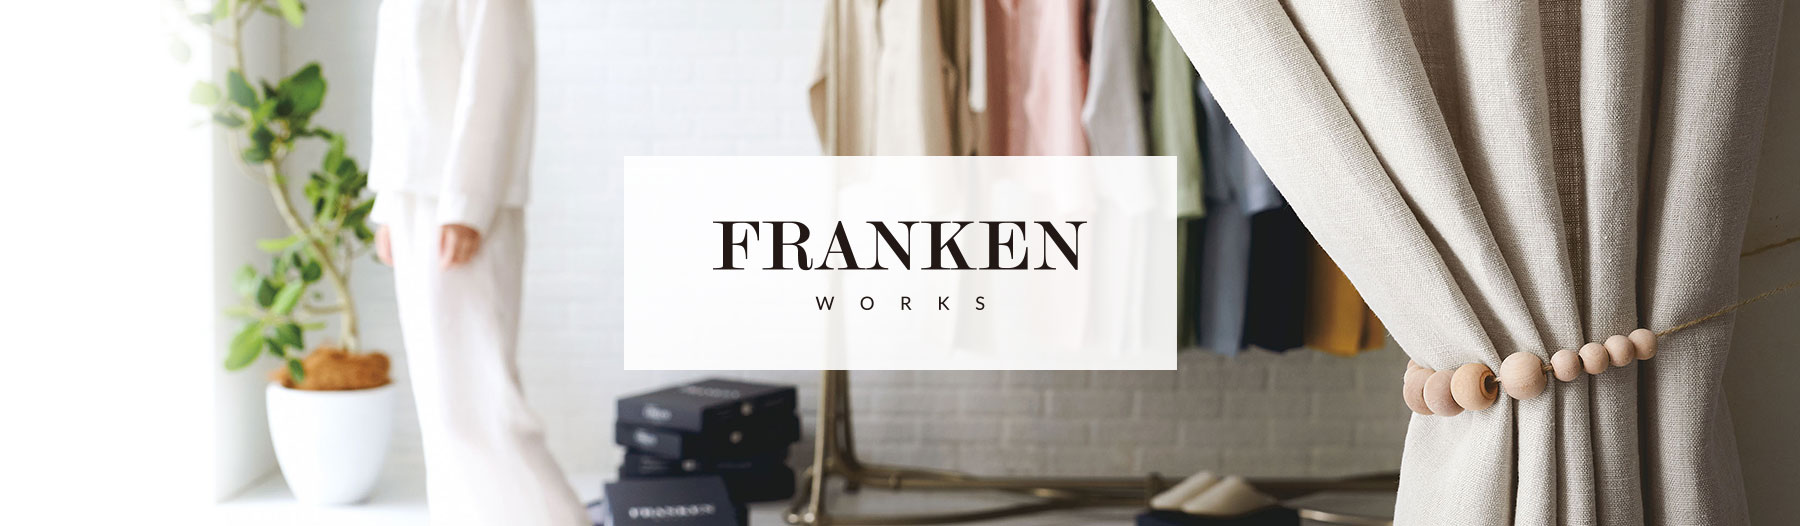 FRANKEN WORKS